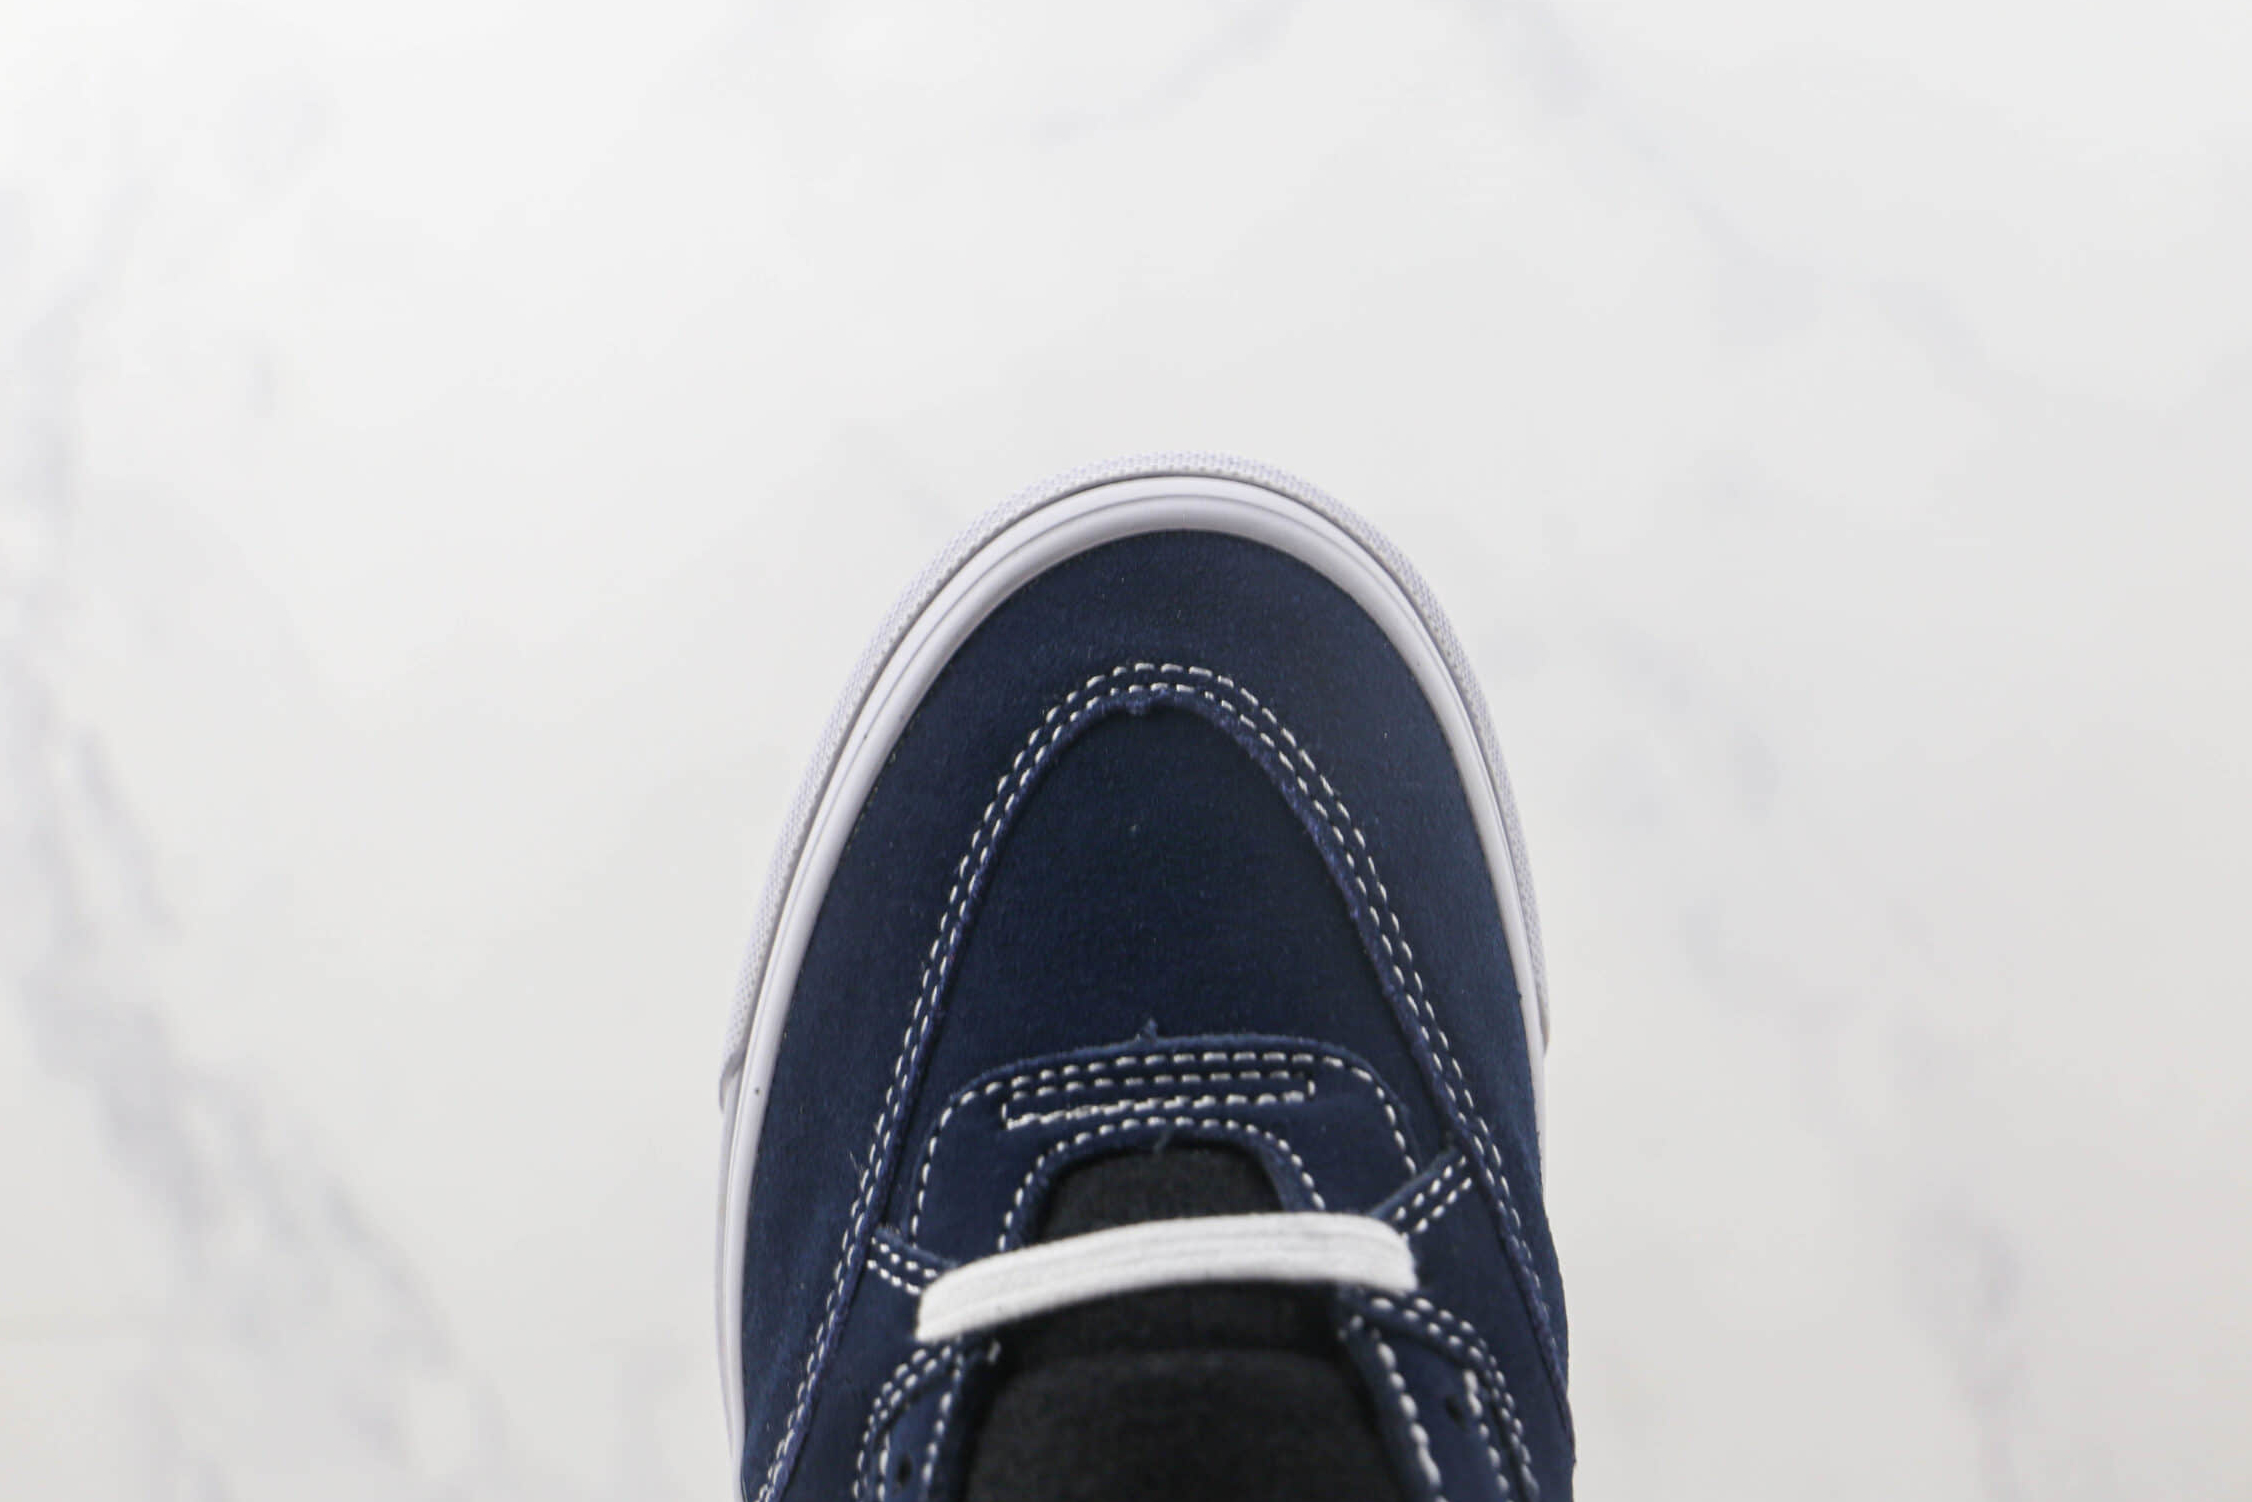 Vans Half Cab 92 Dress Blues – Authentic Skate Shoe